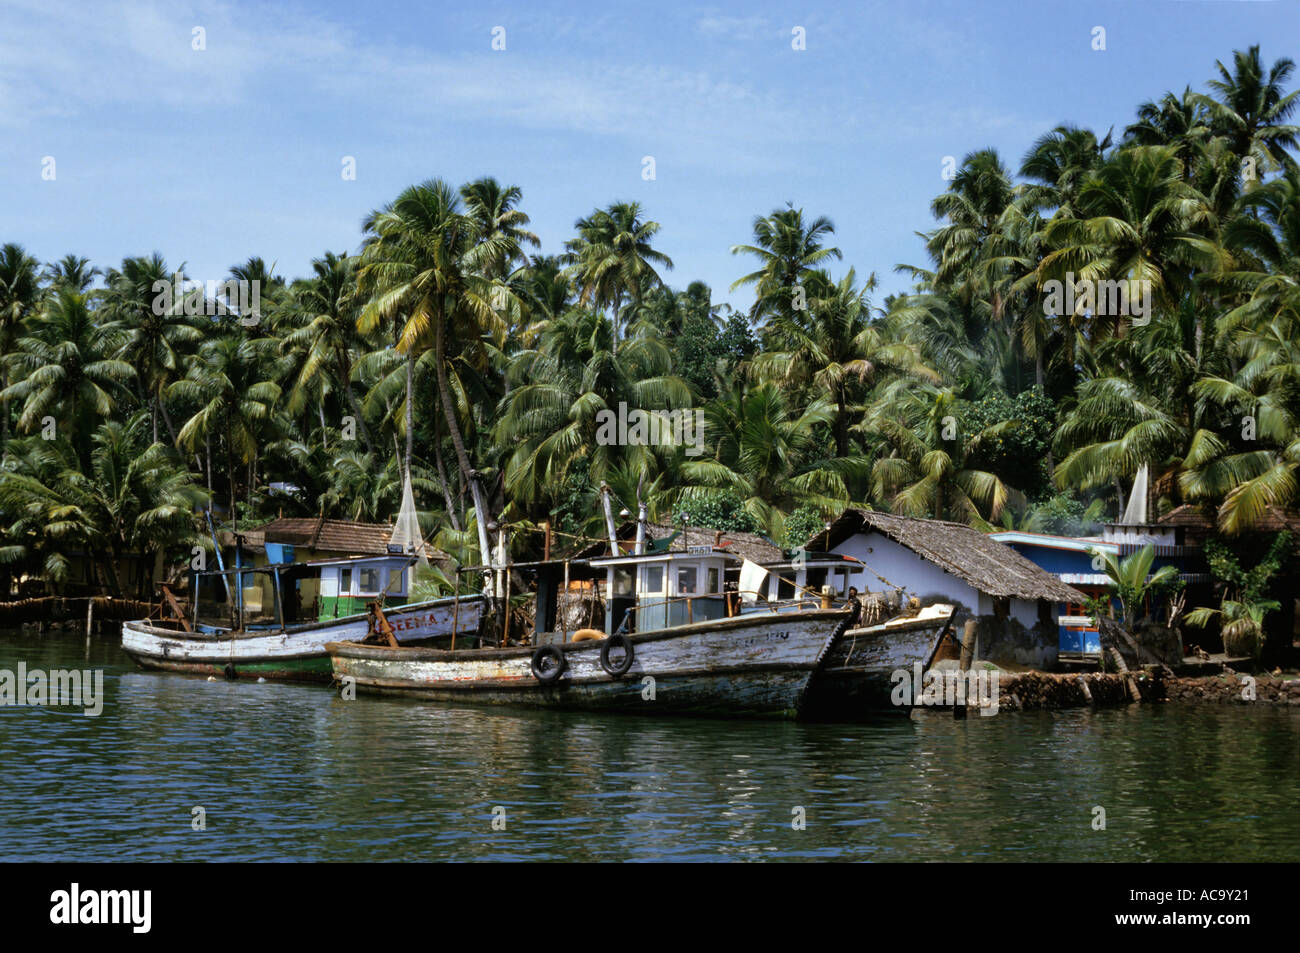 Angelboote/Fischerboote angedockt, in einem Dorf Kai, Kerala, Indien. Stockfoto